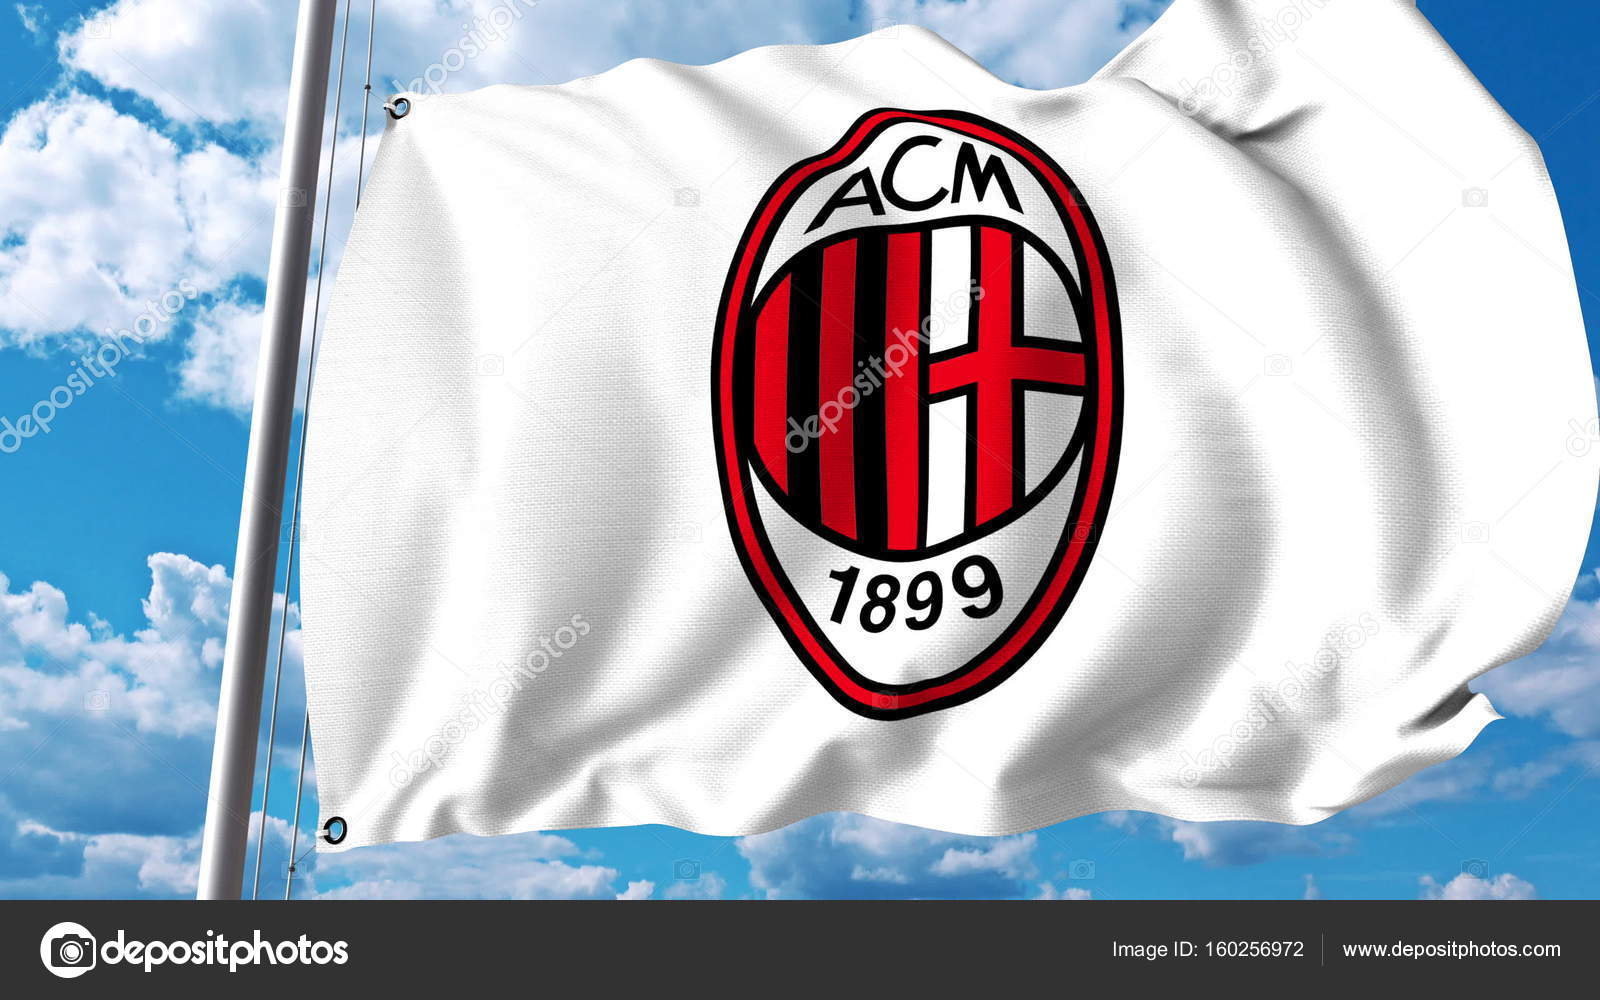 6 5 Ac Milan Football Stock Photos Images Download Ac Milan Football Pictures On Depositphotos